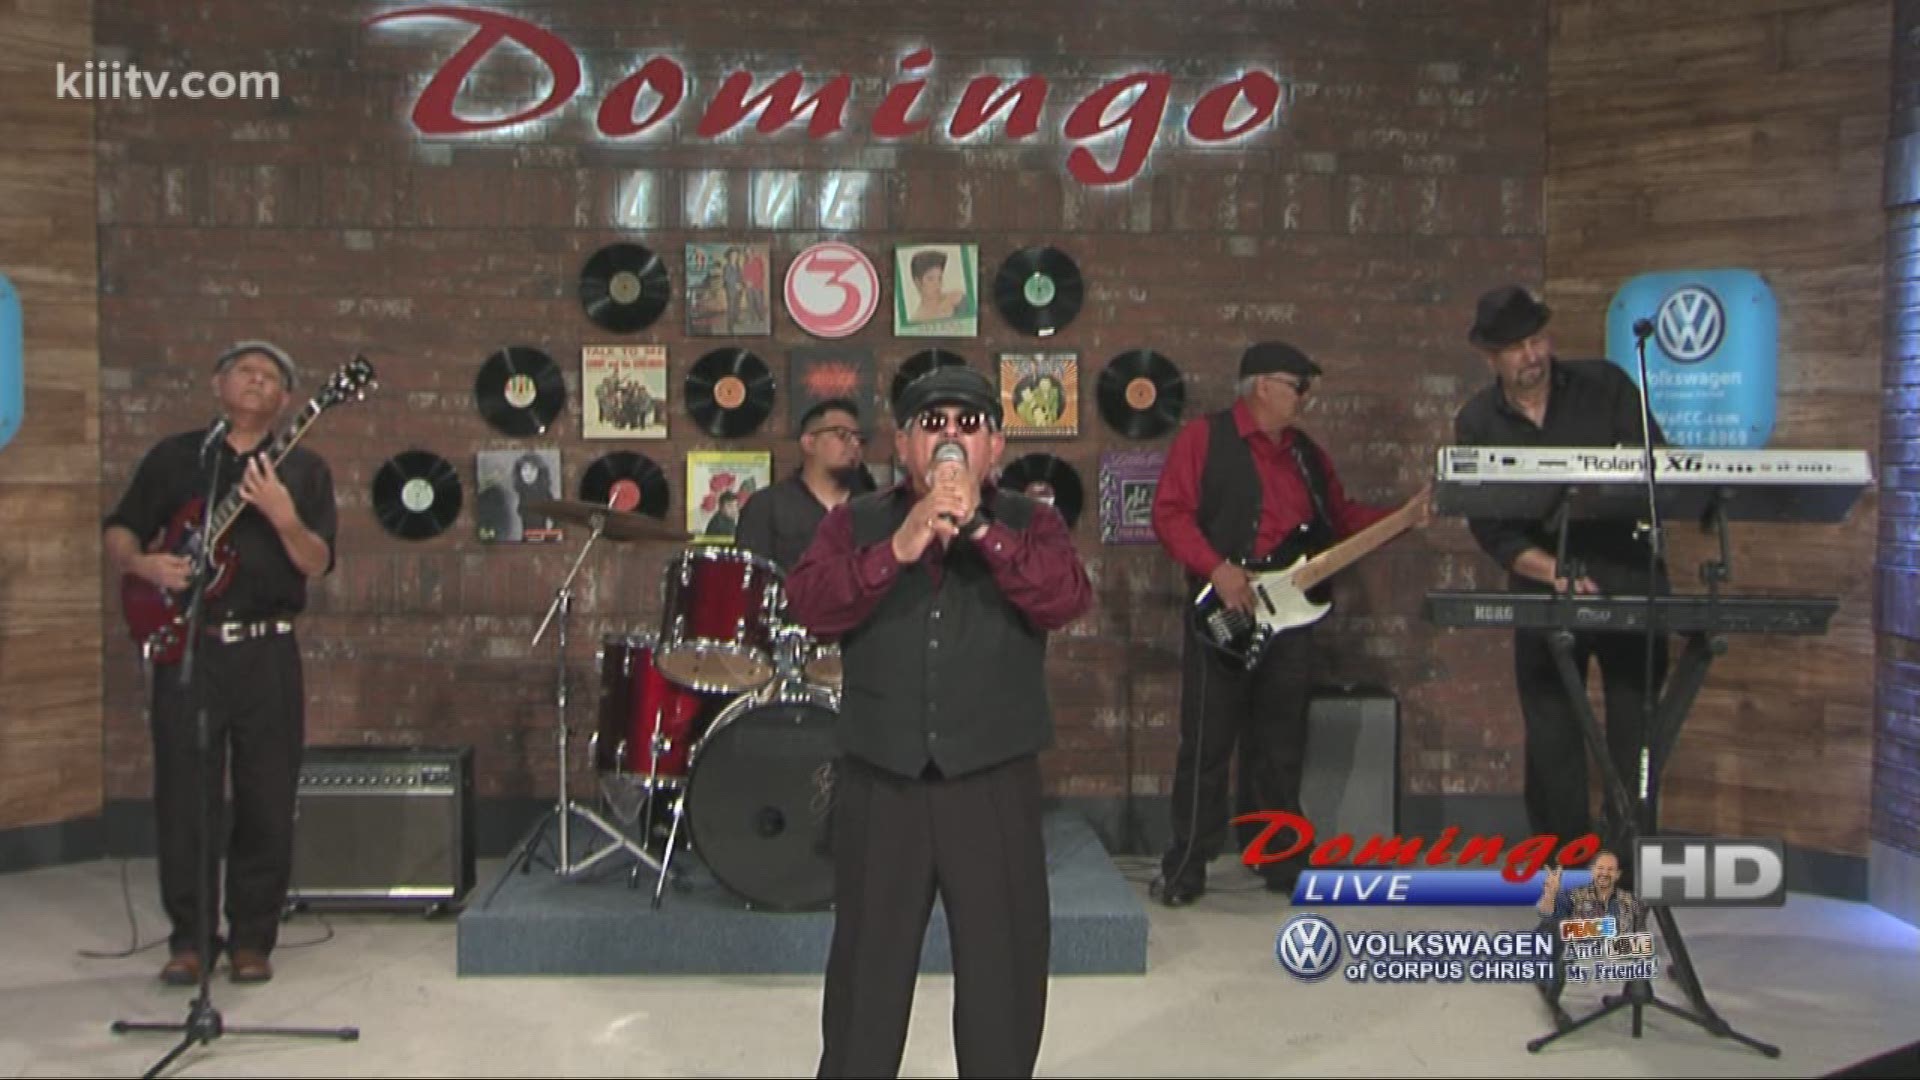 Grupo Bezzo performing "No Me Este Llorando" on Domingo Live.